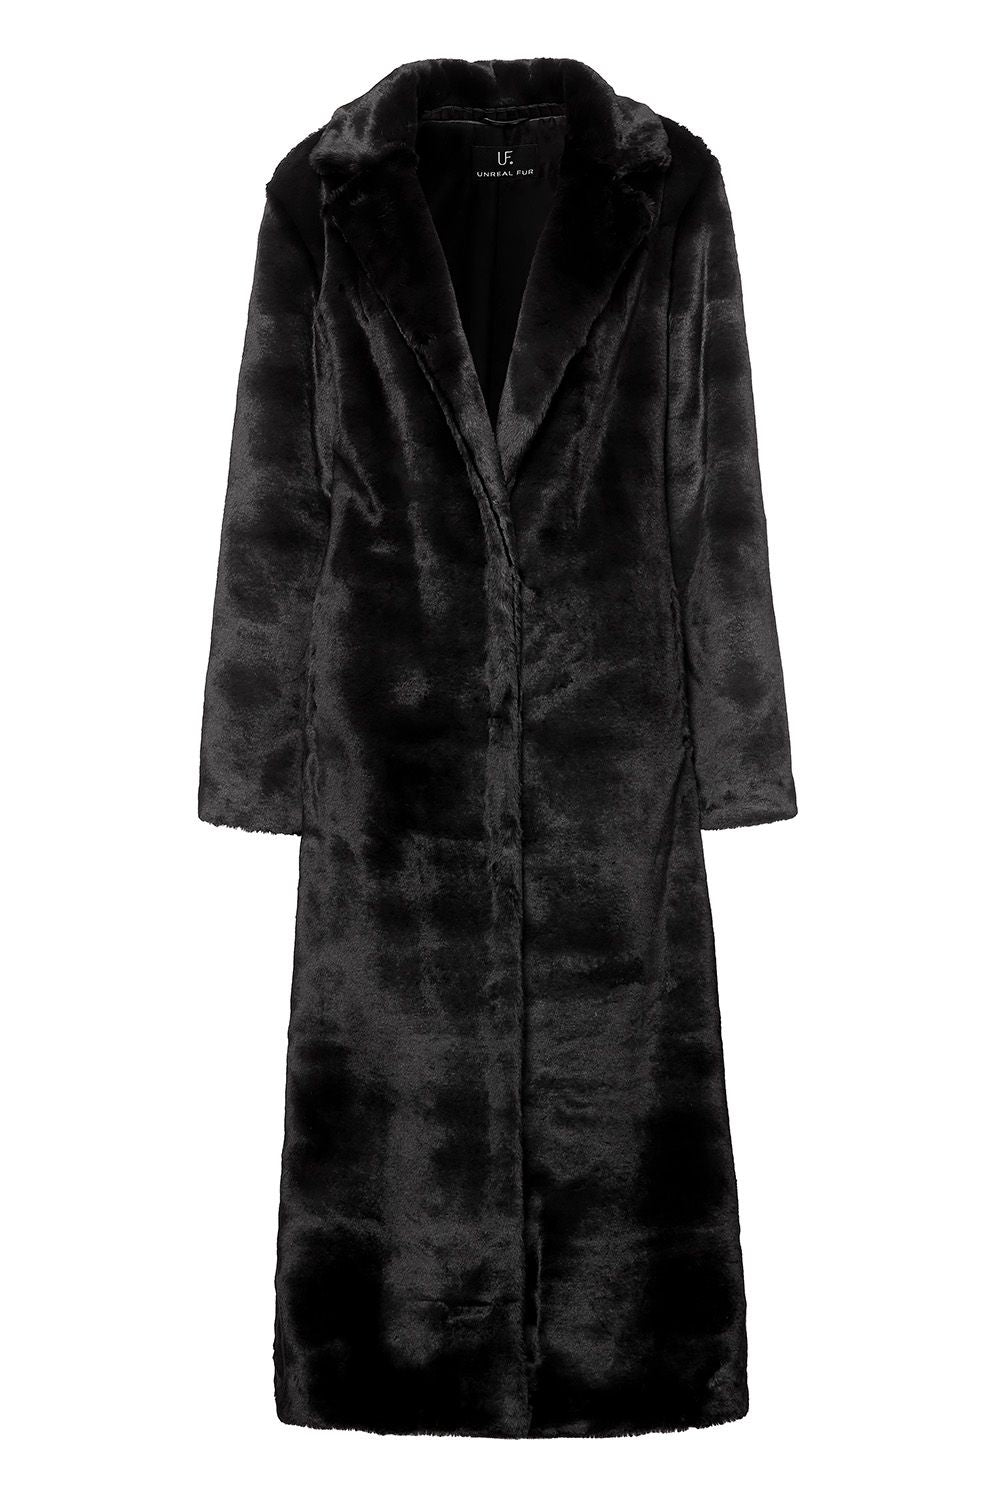 Black Bird Coat